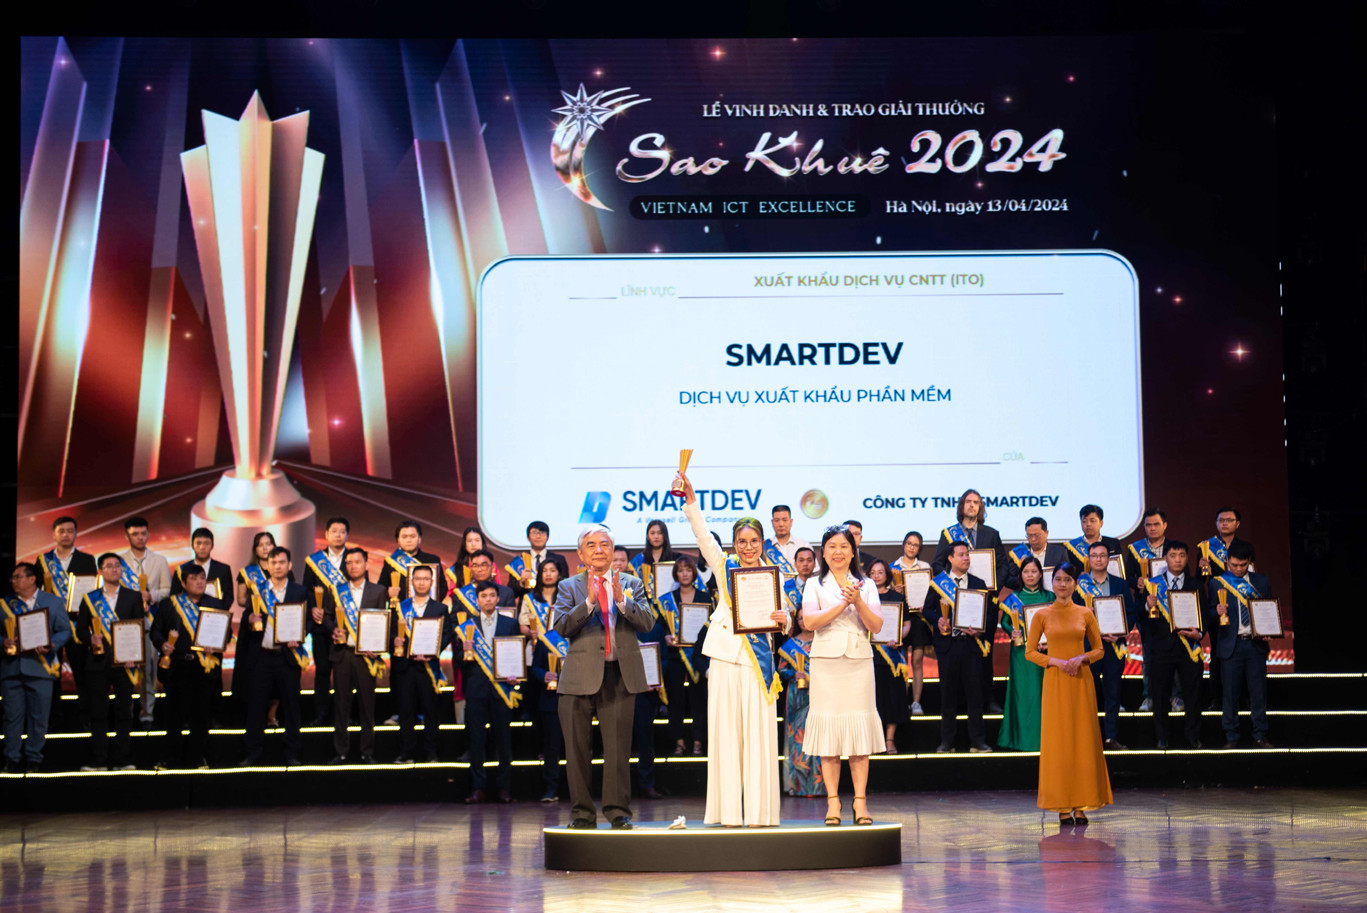 [Tin công nghệ] SmartDev giành ‘cú đúp’ giải thưởng Sao Khuê 2024